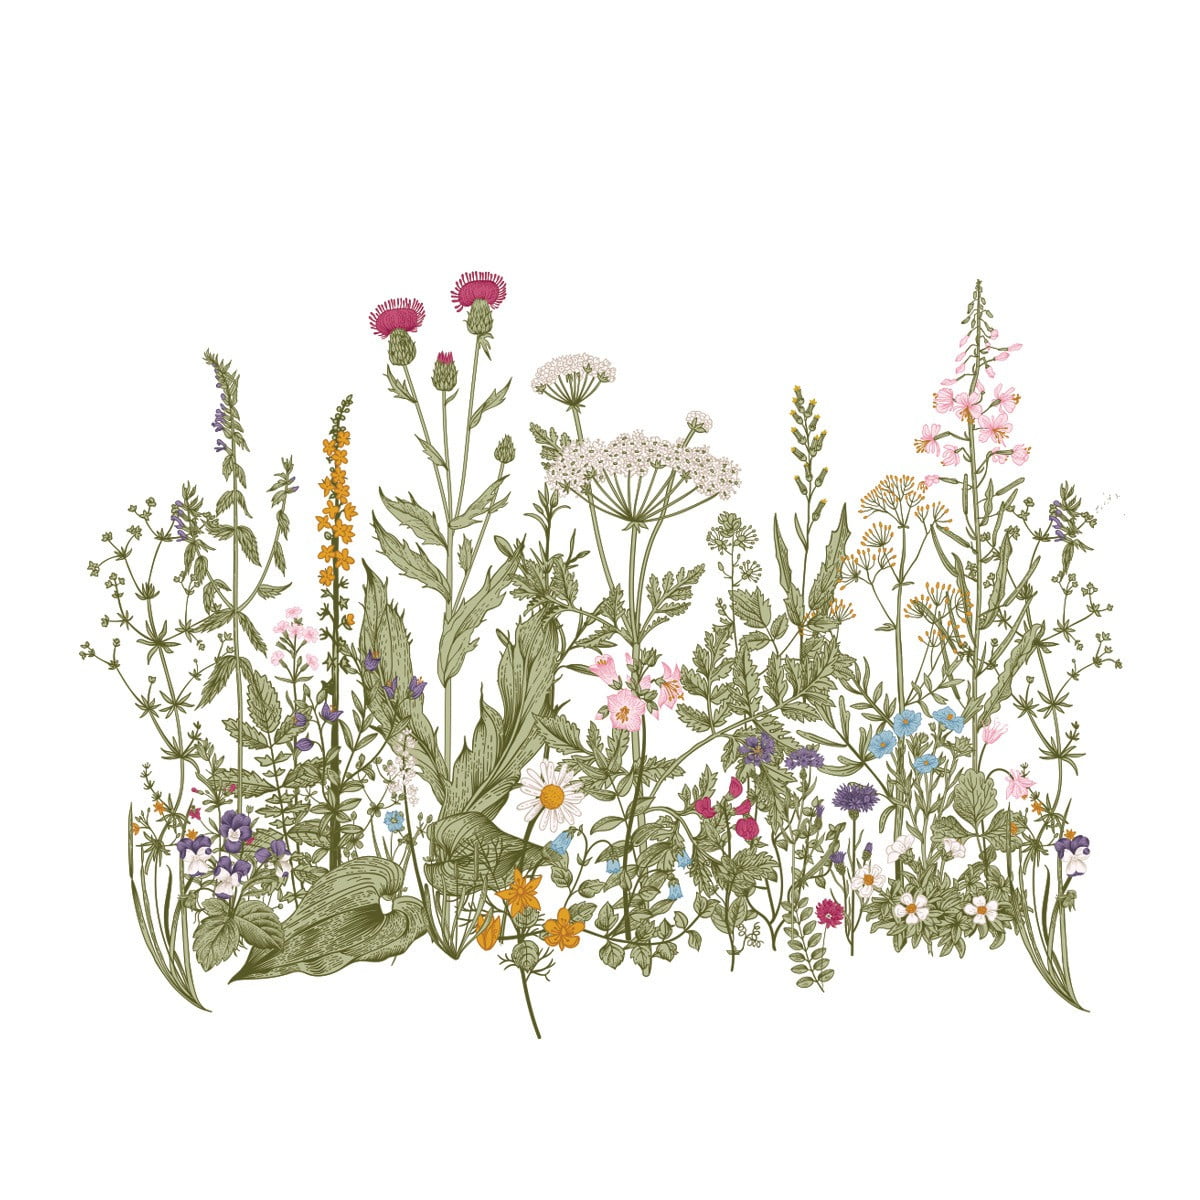 Wandsticker, der grosse bunte Wiese mit verschiedenen Pflanzen und Blumen